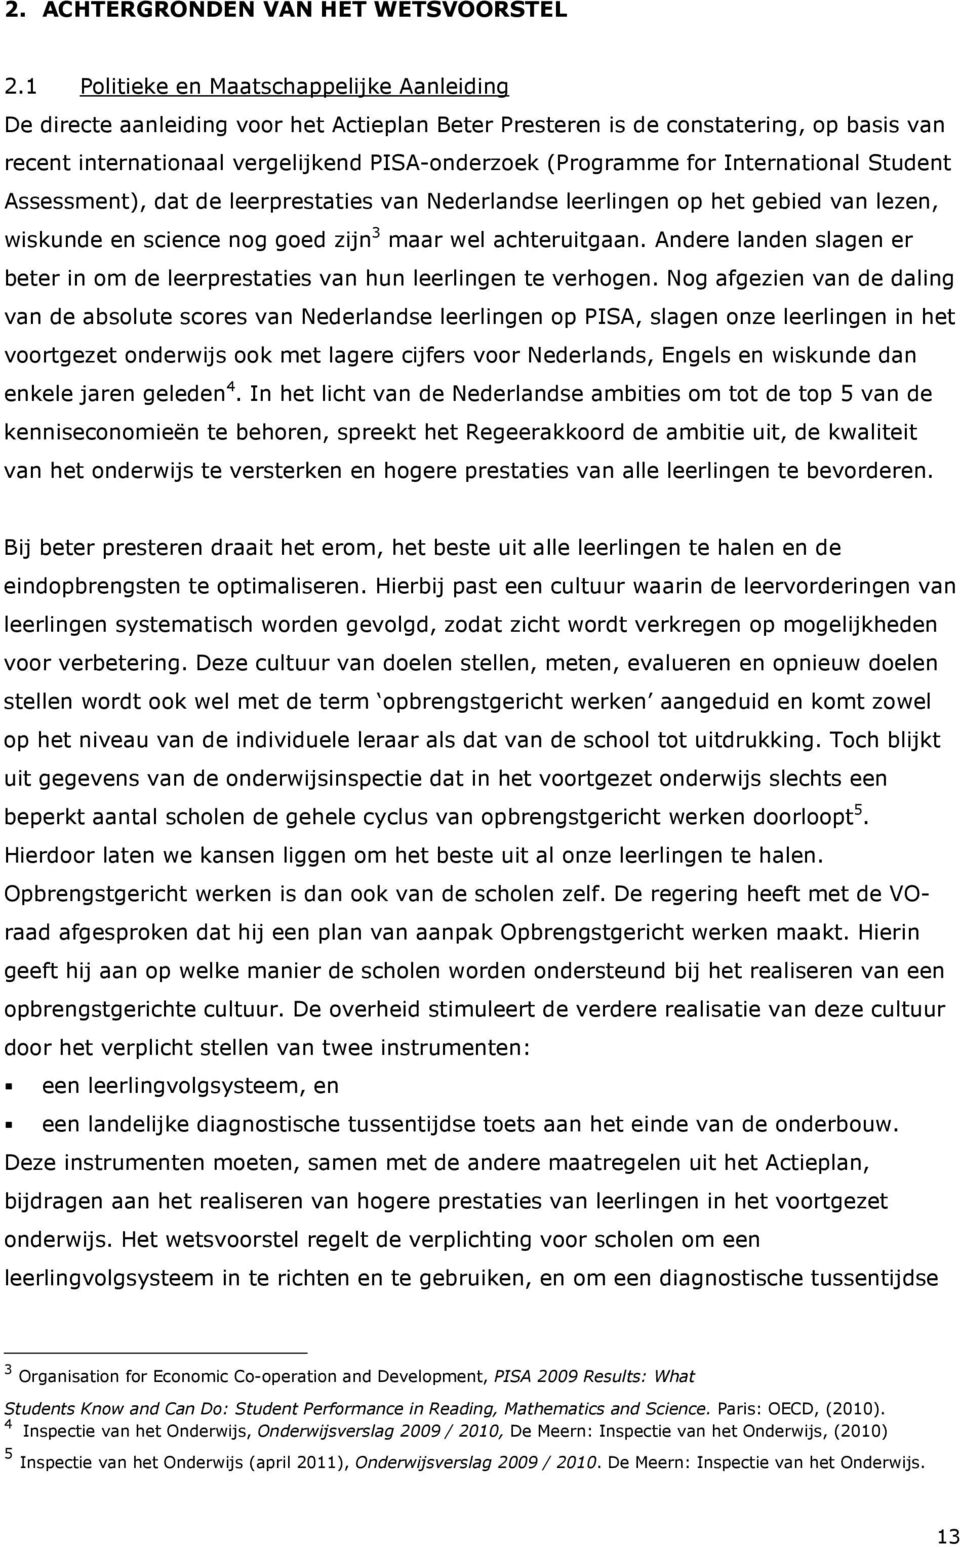 International Student Assessment), dat de leerprestaties van Nederlandse leerlingen op het gebied van lezen, wiskunde en science nog goed zijn 3 maar wel achteruitgaan.